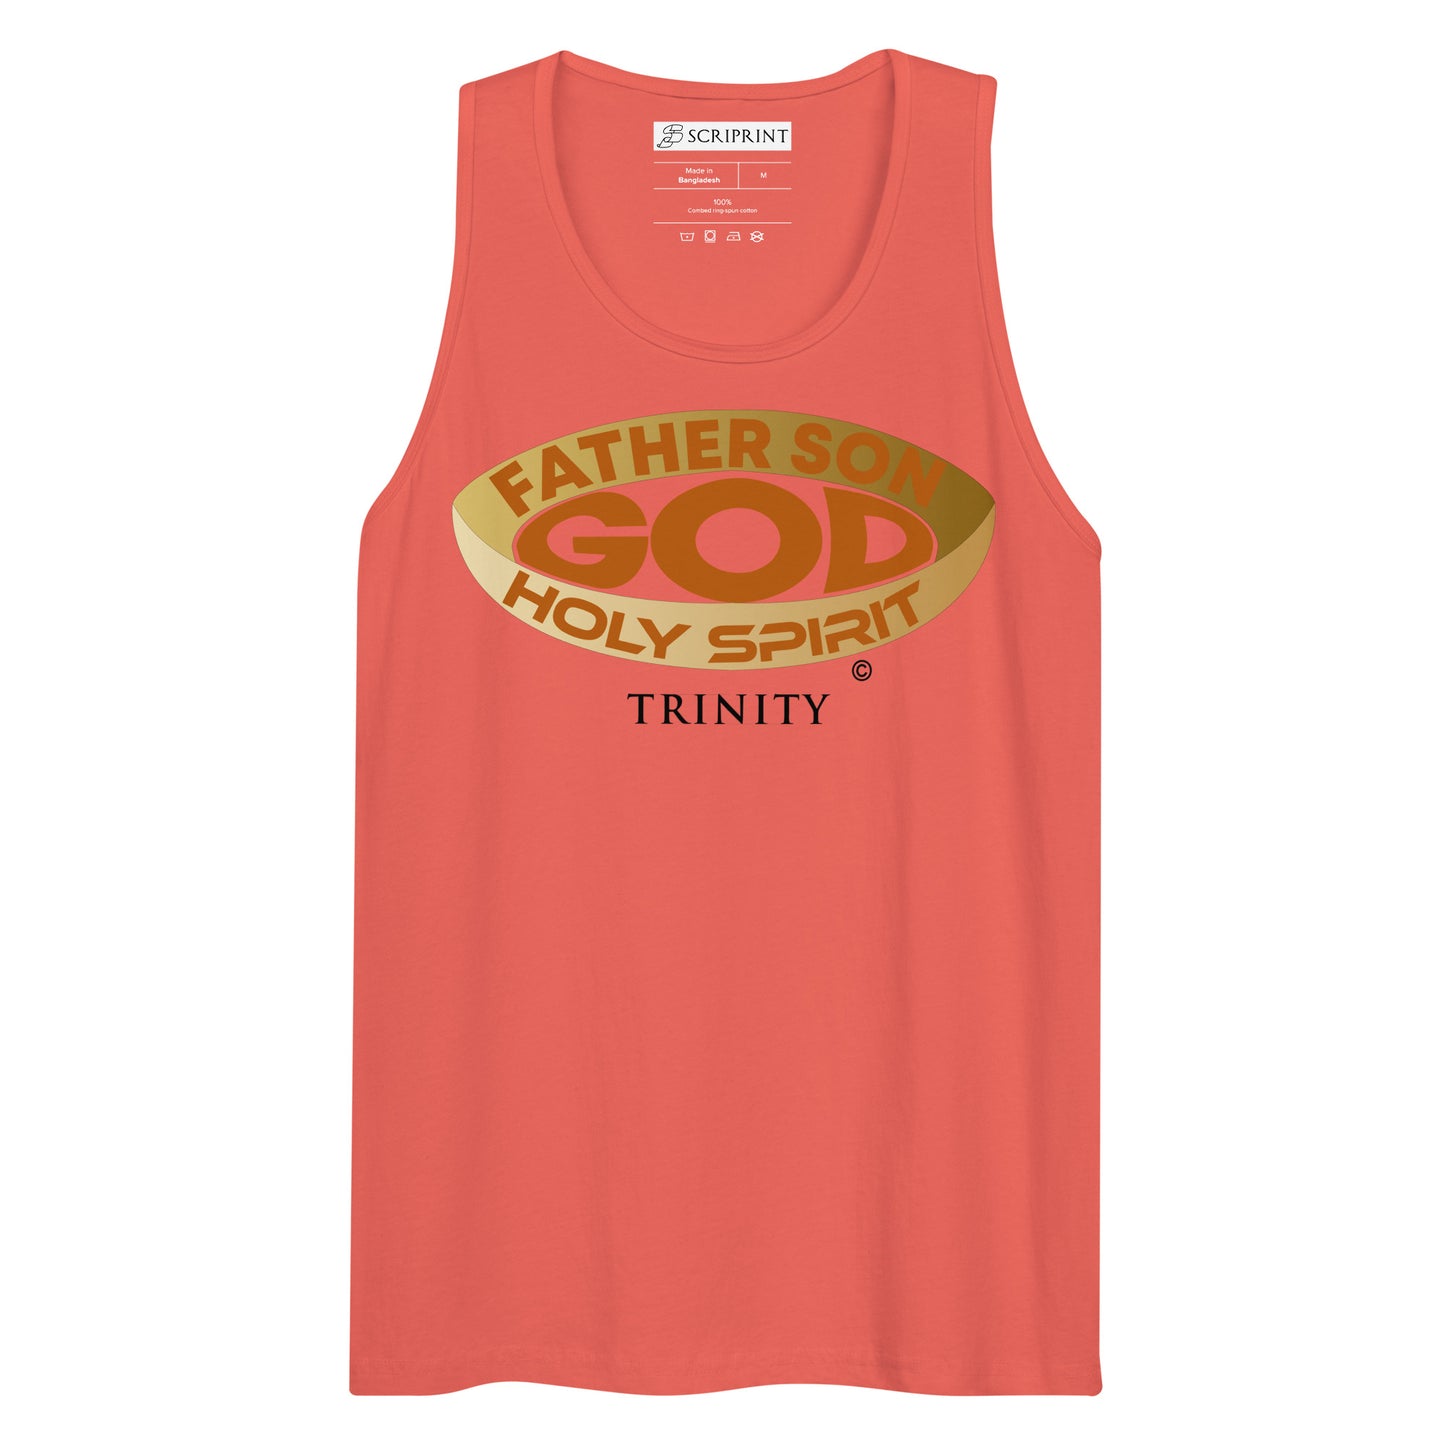 Trinity Men’s Premium Tank Top